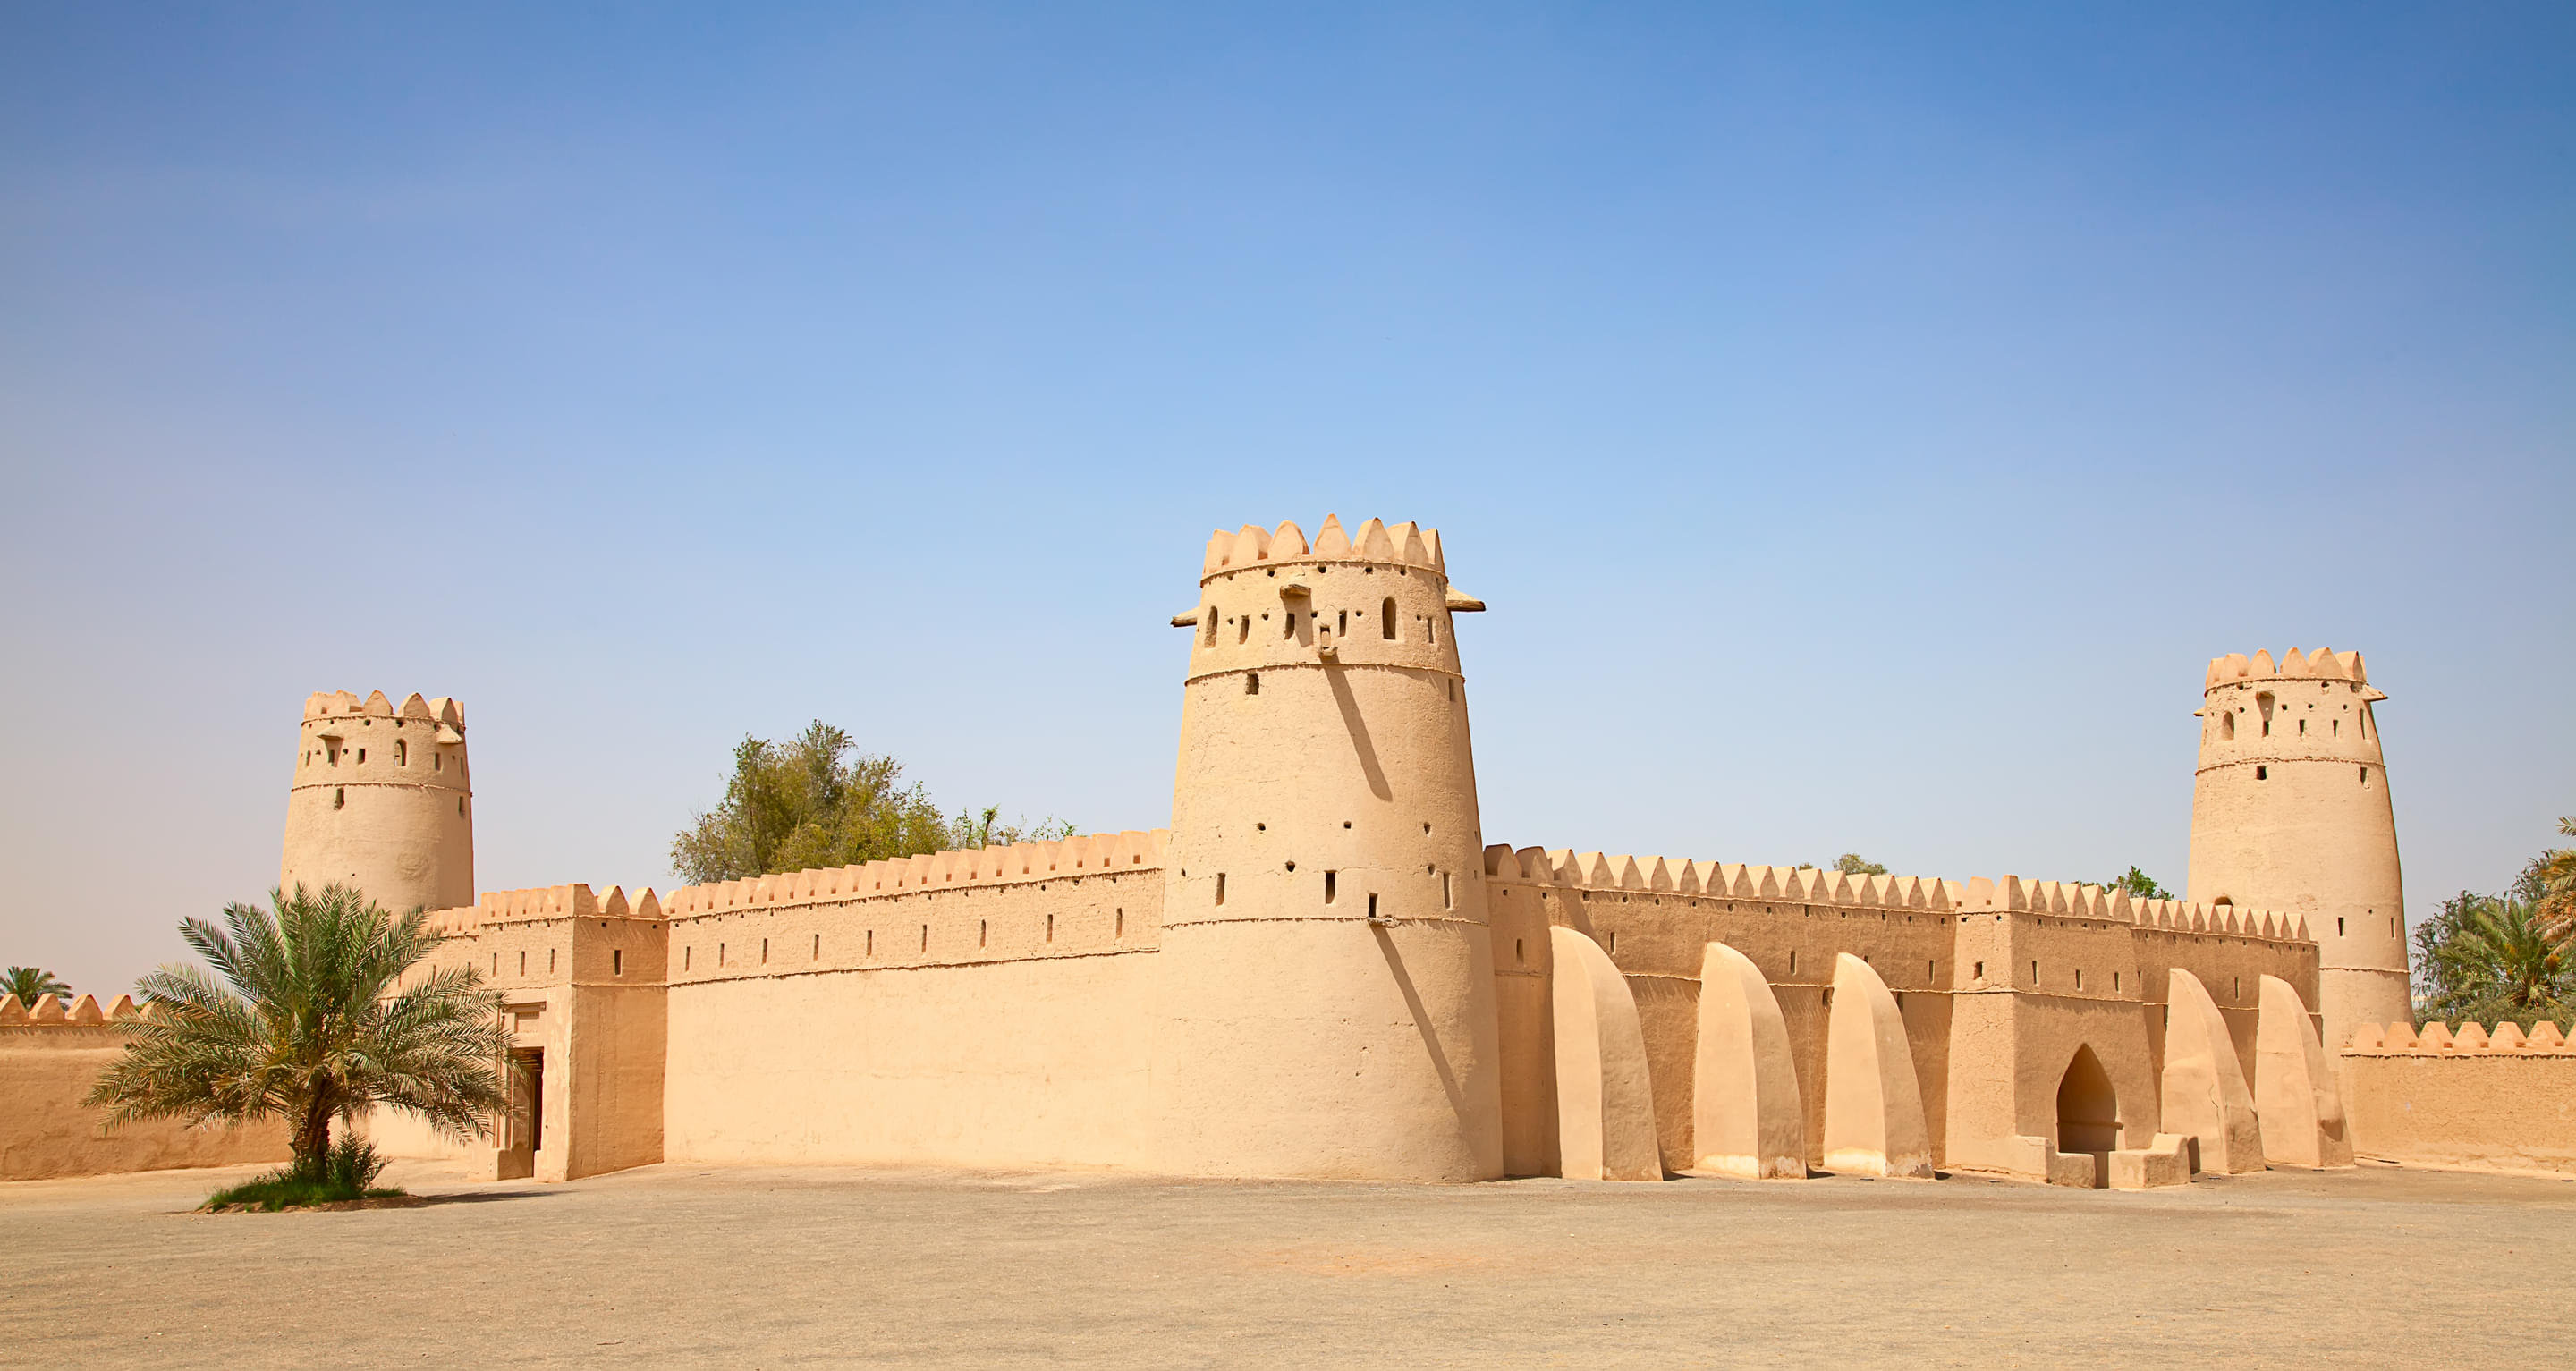 Al Ain Museum Overview